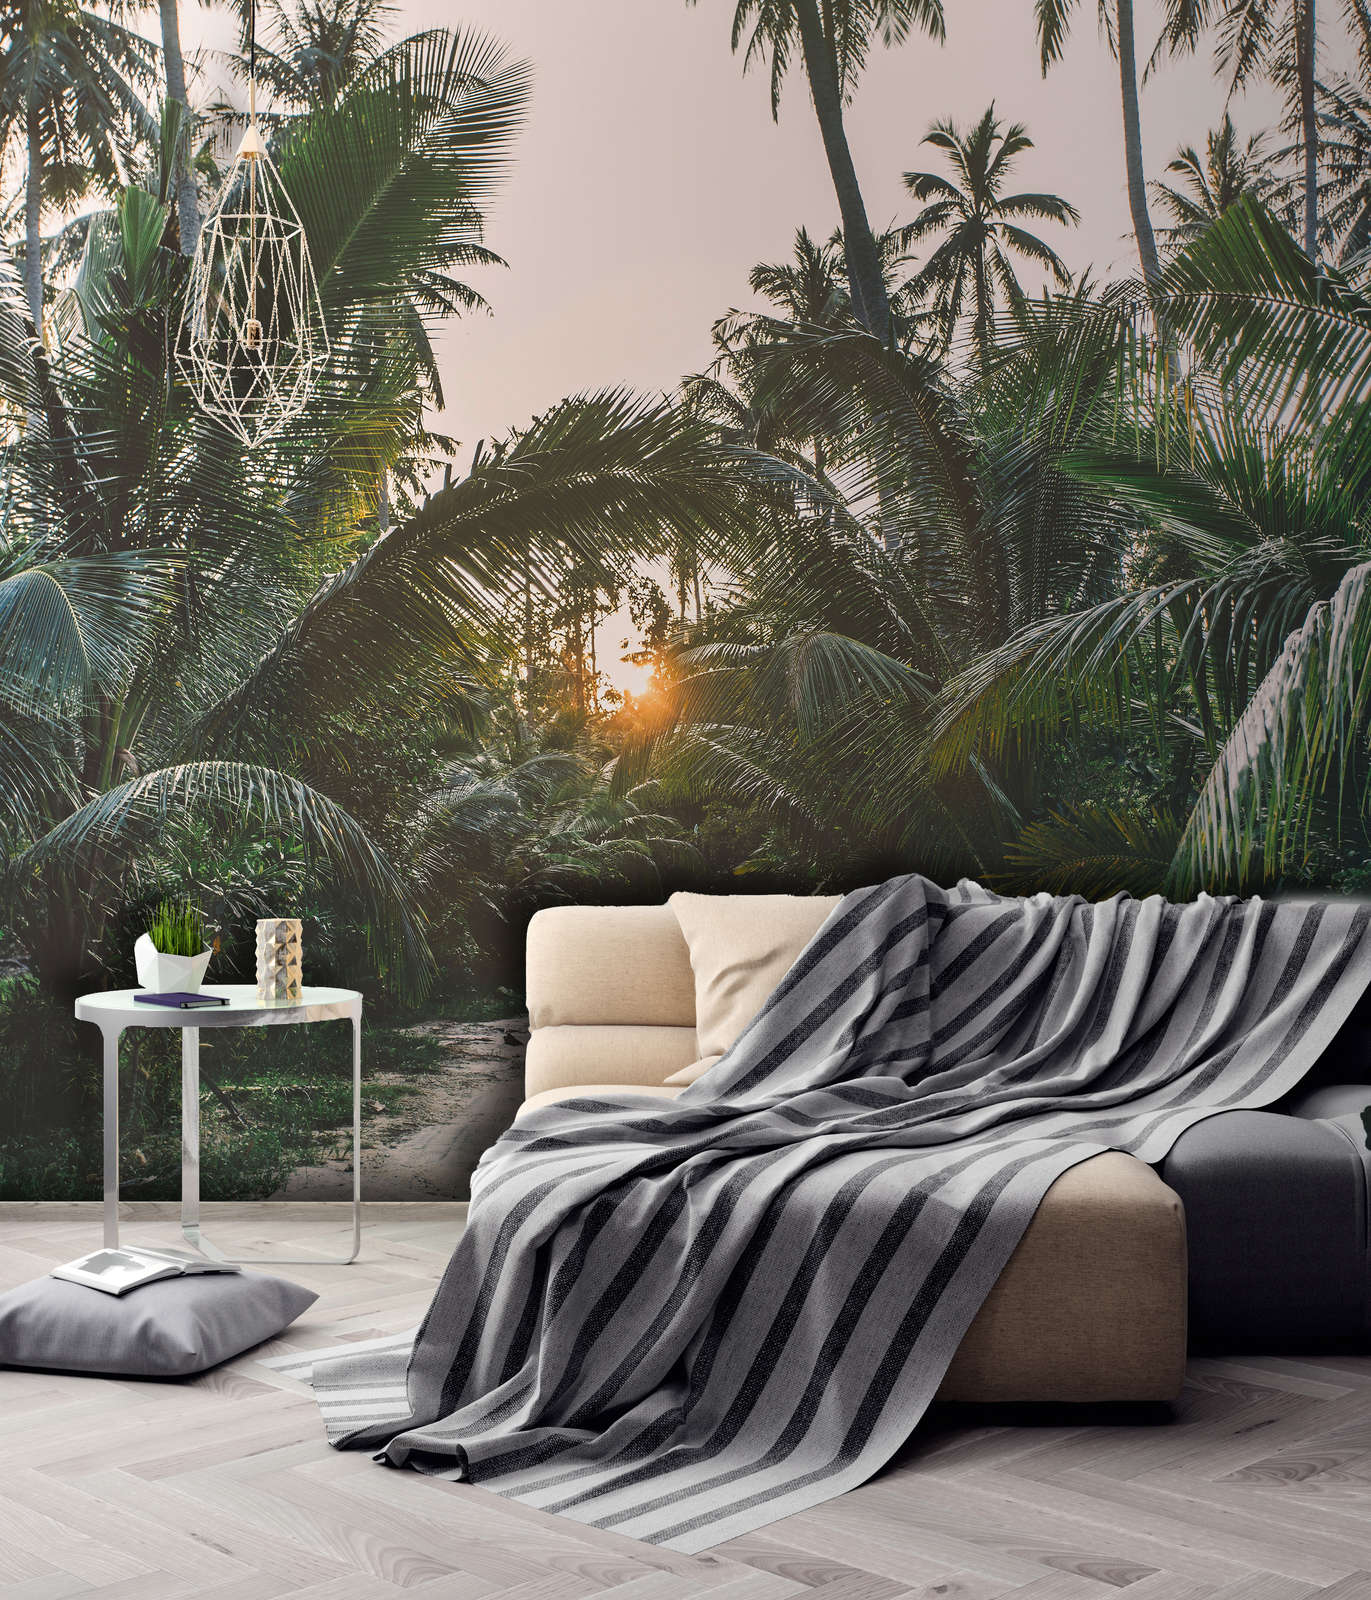             Digital behang met pad door tropisch oerwoud - Groen, Beige, Geel
        